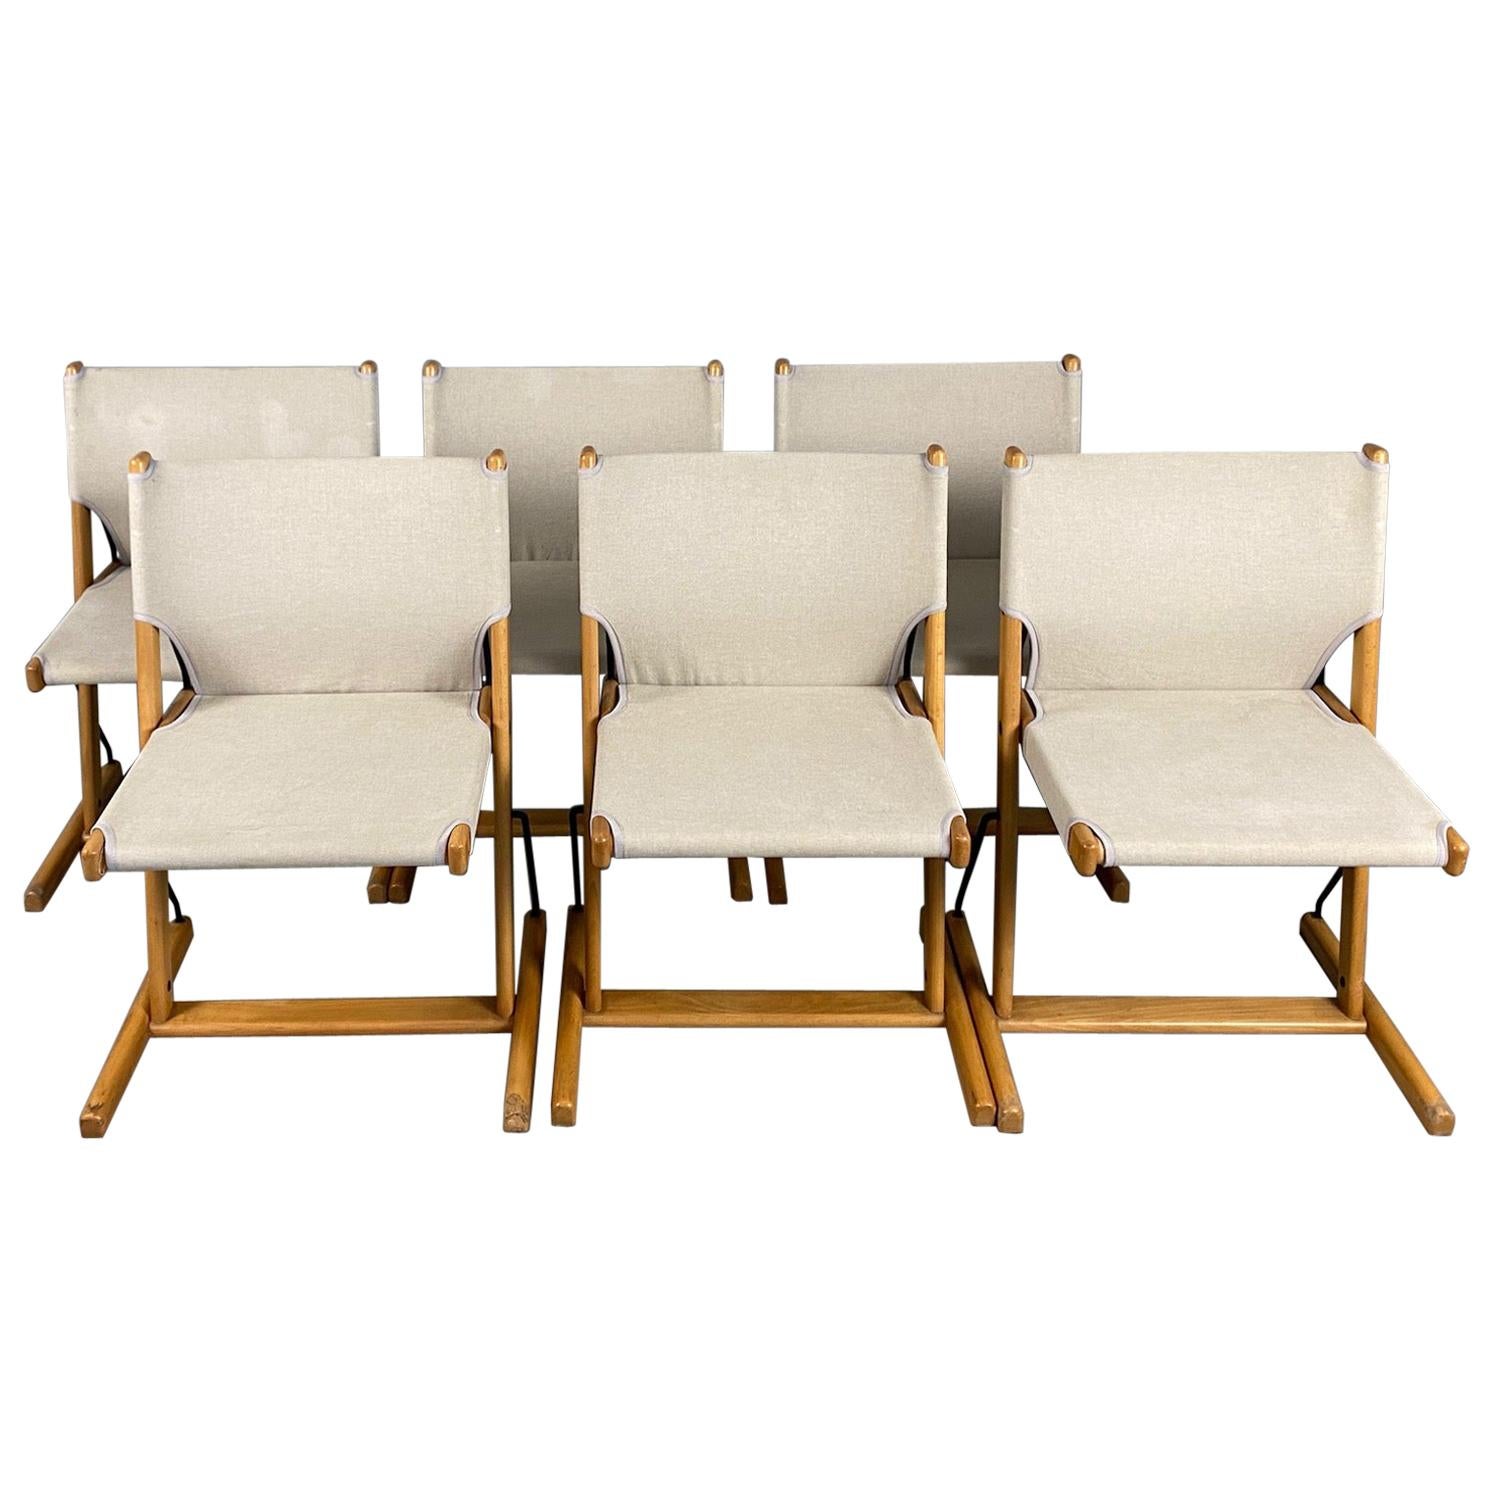 Six chaises italiennes « Nina & Santamaria » conçues par le designer Piero De Martini pour Cassina